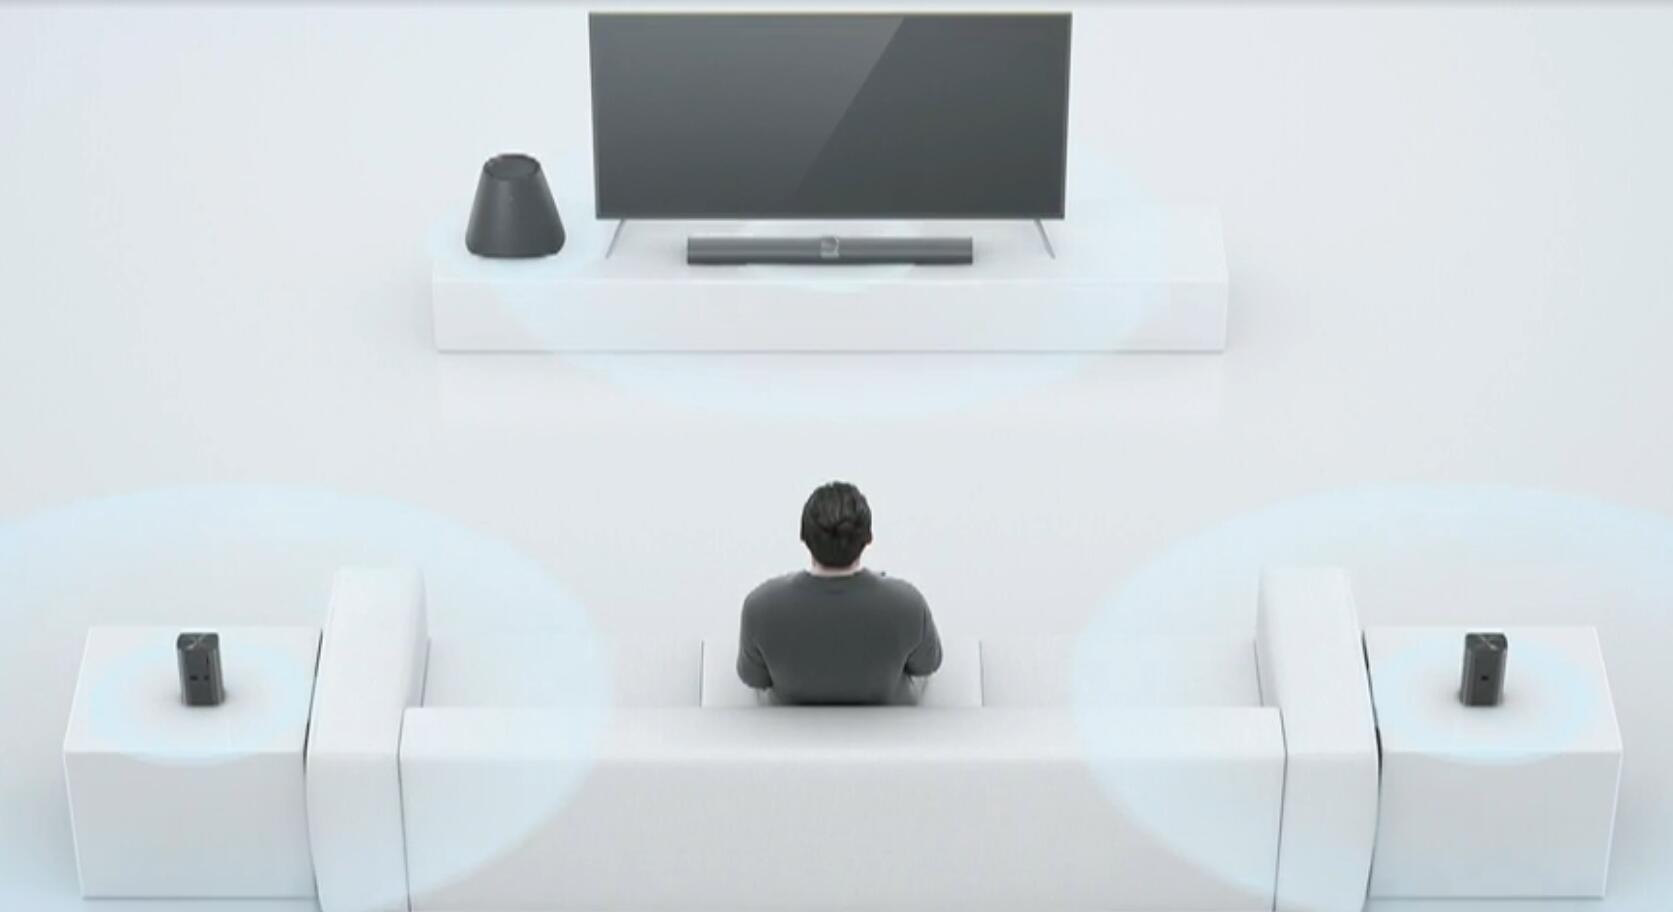 乐视超级电视是如何通过语音助手来操控电视机